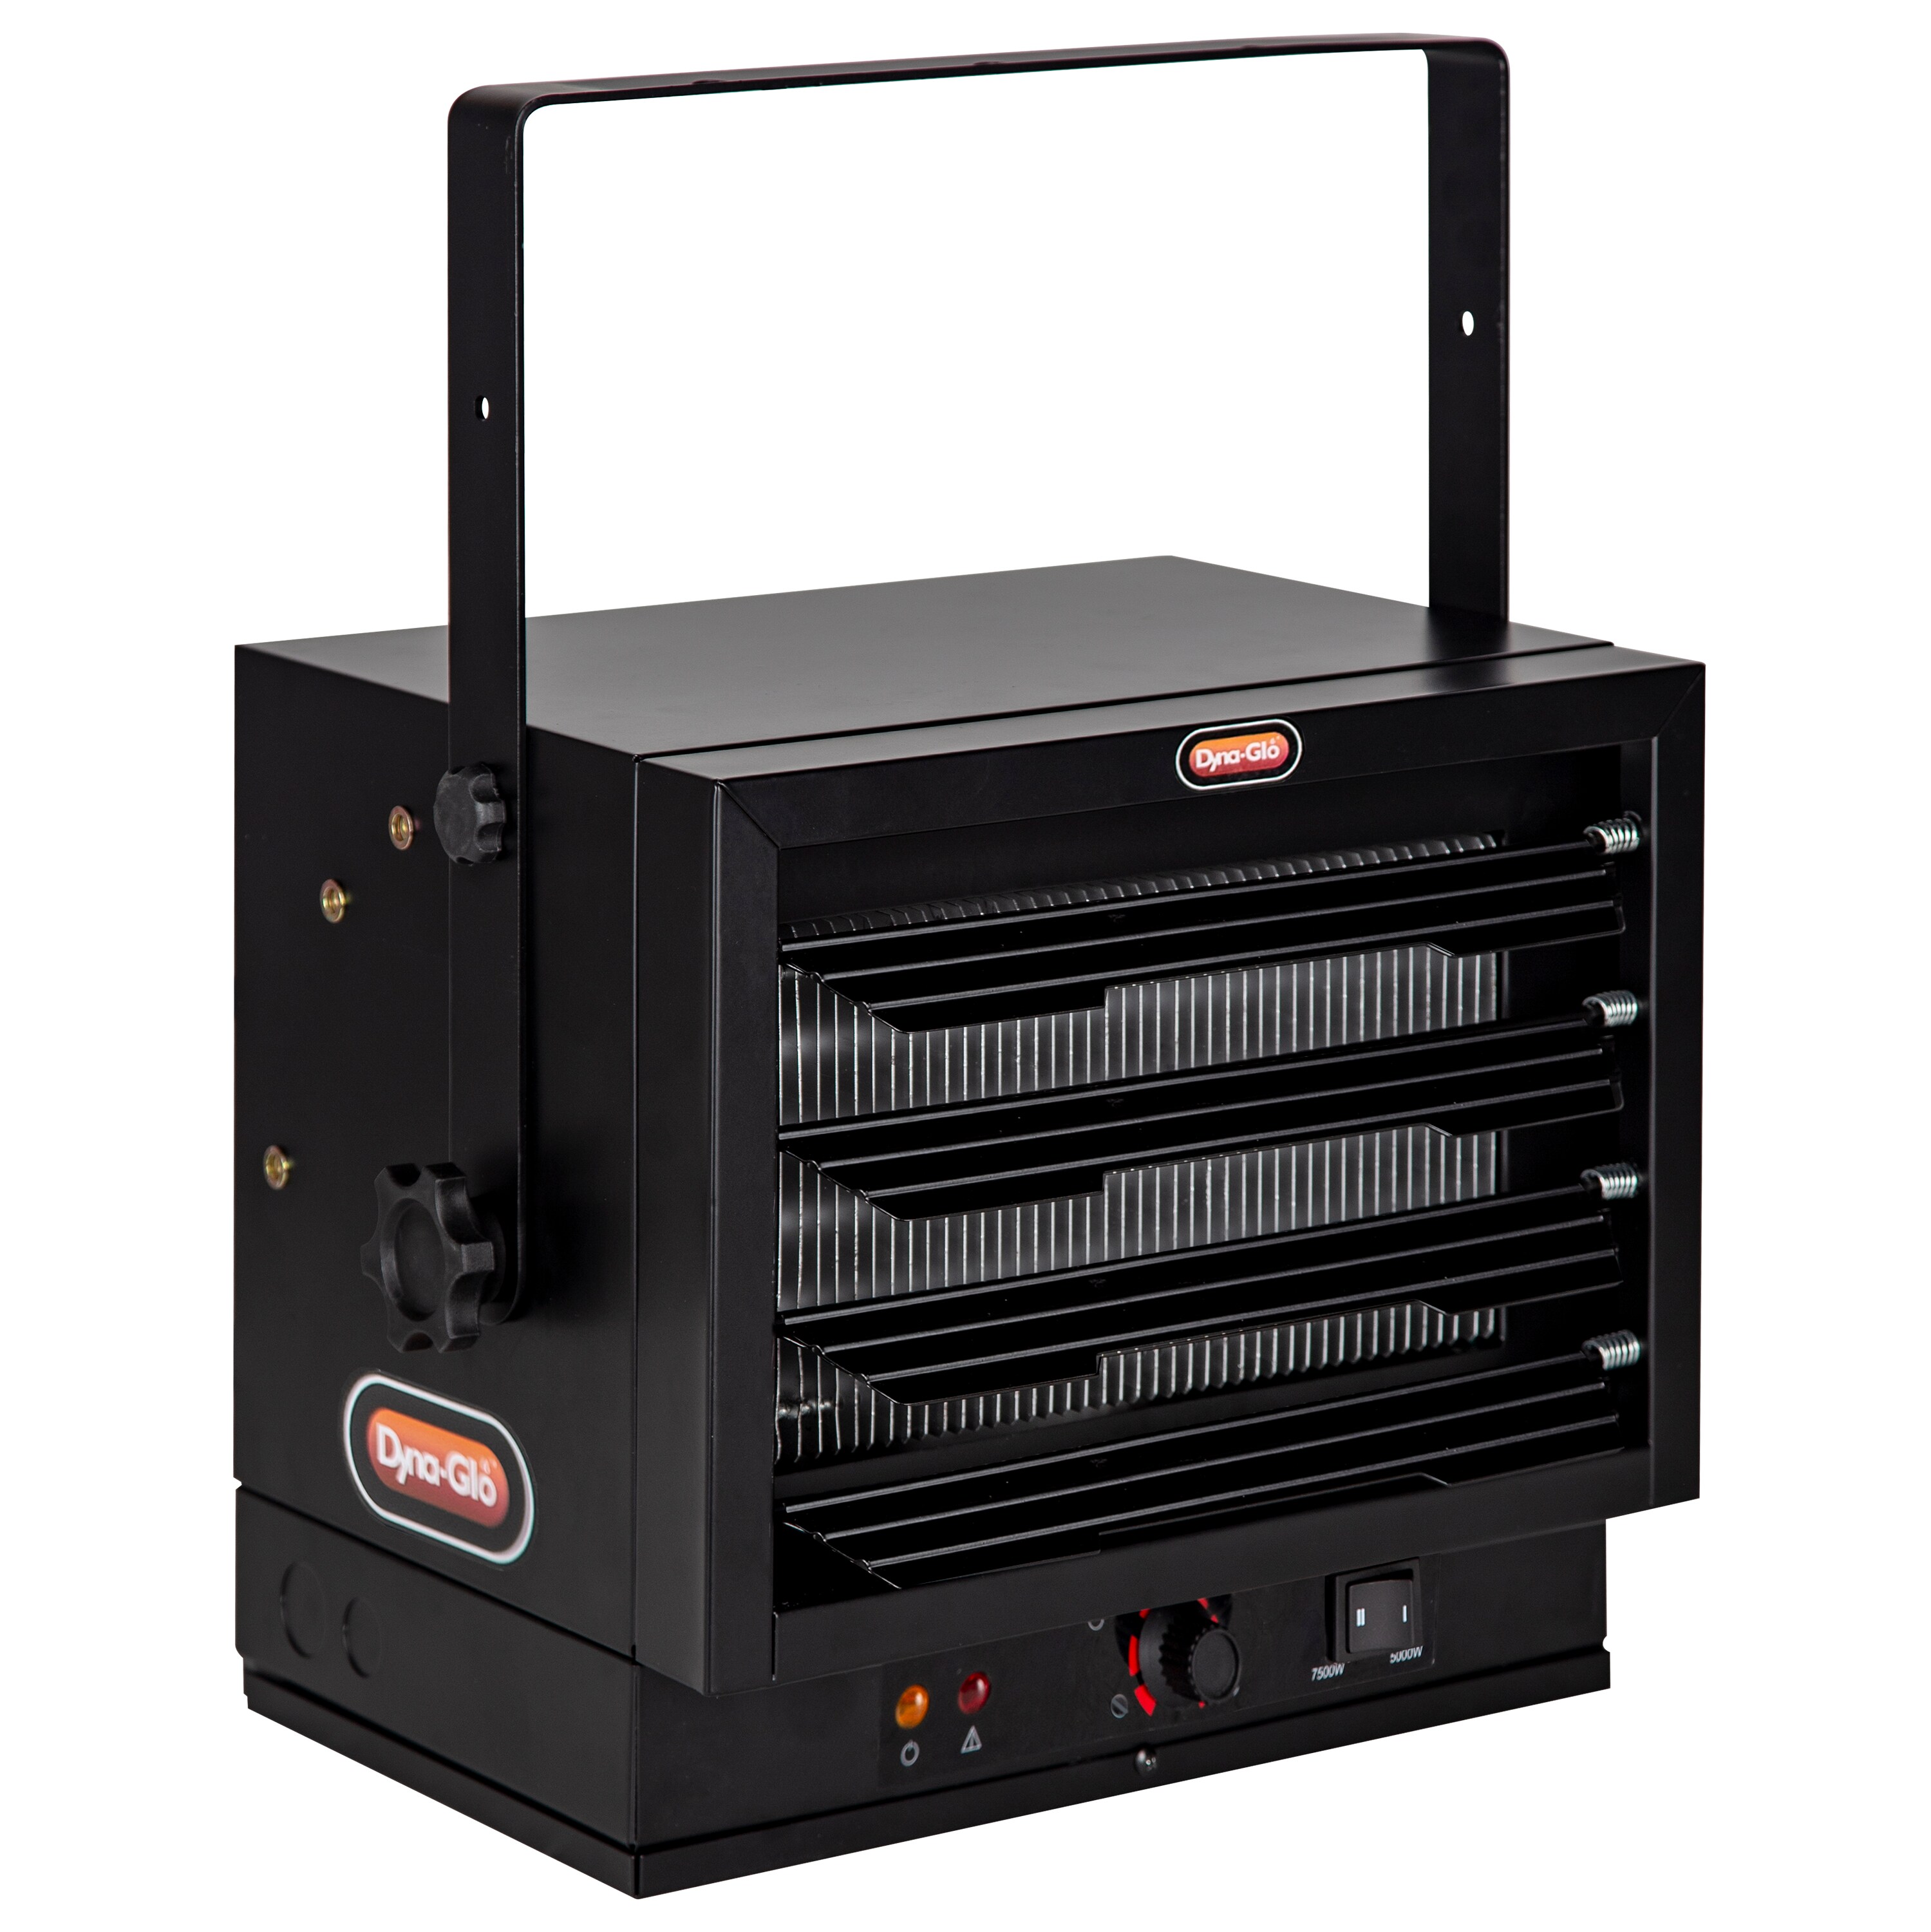 Dyna-Glo 7500-Watt Electric Garage Heater